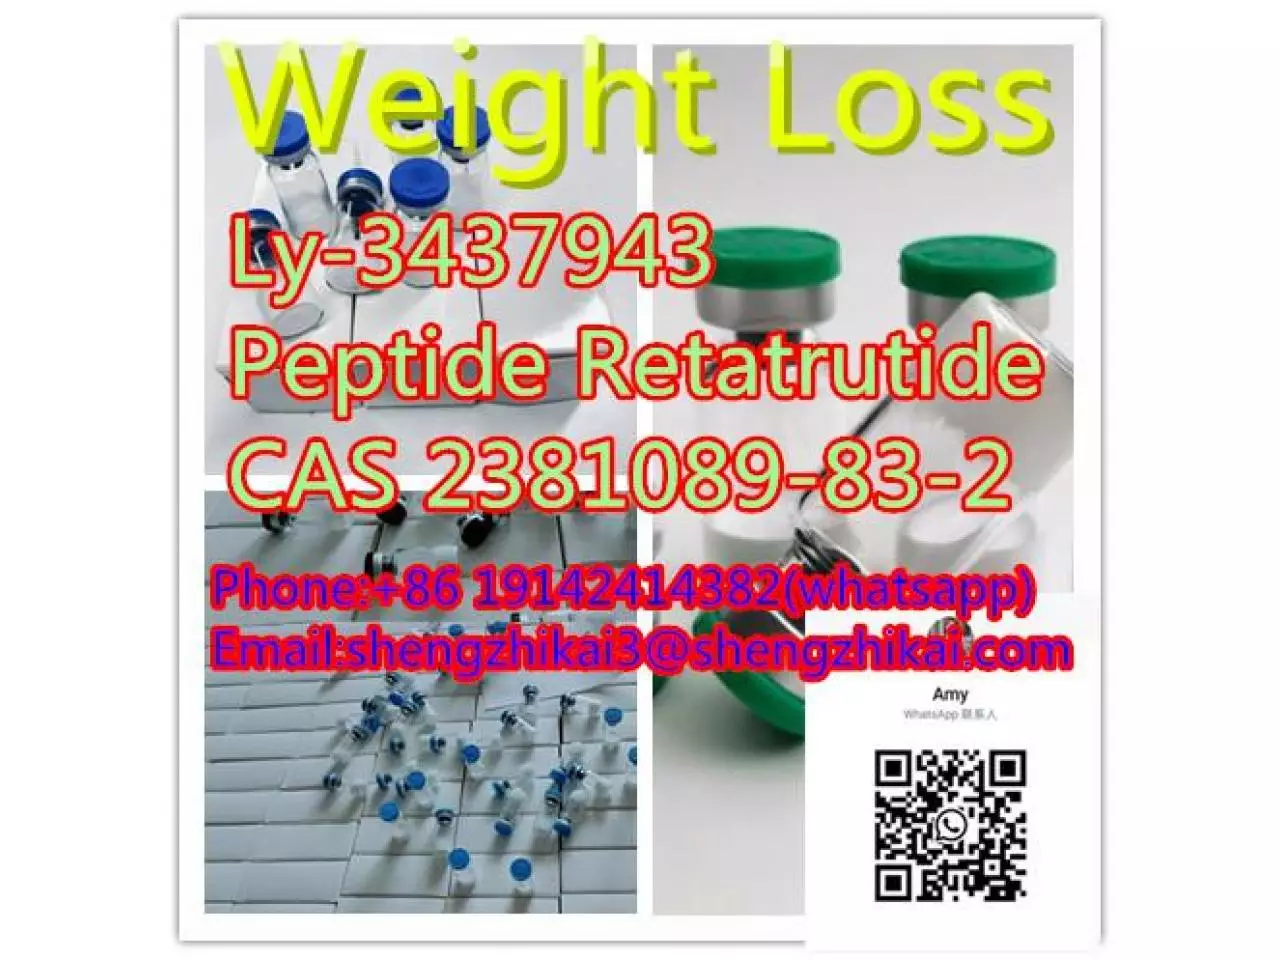 الشركة المصنعة توريد الببتيدات ريتاتروتيد CAS 2381089-83-2 Ly3437943 ريتاتروتيد - 10/10